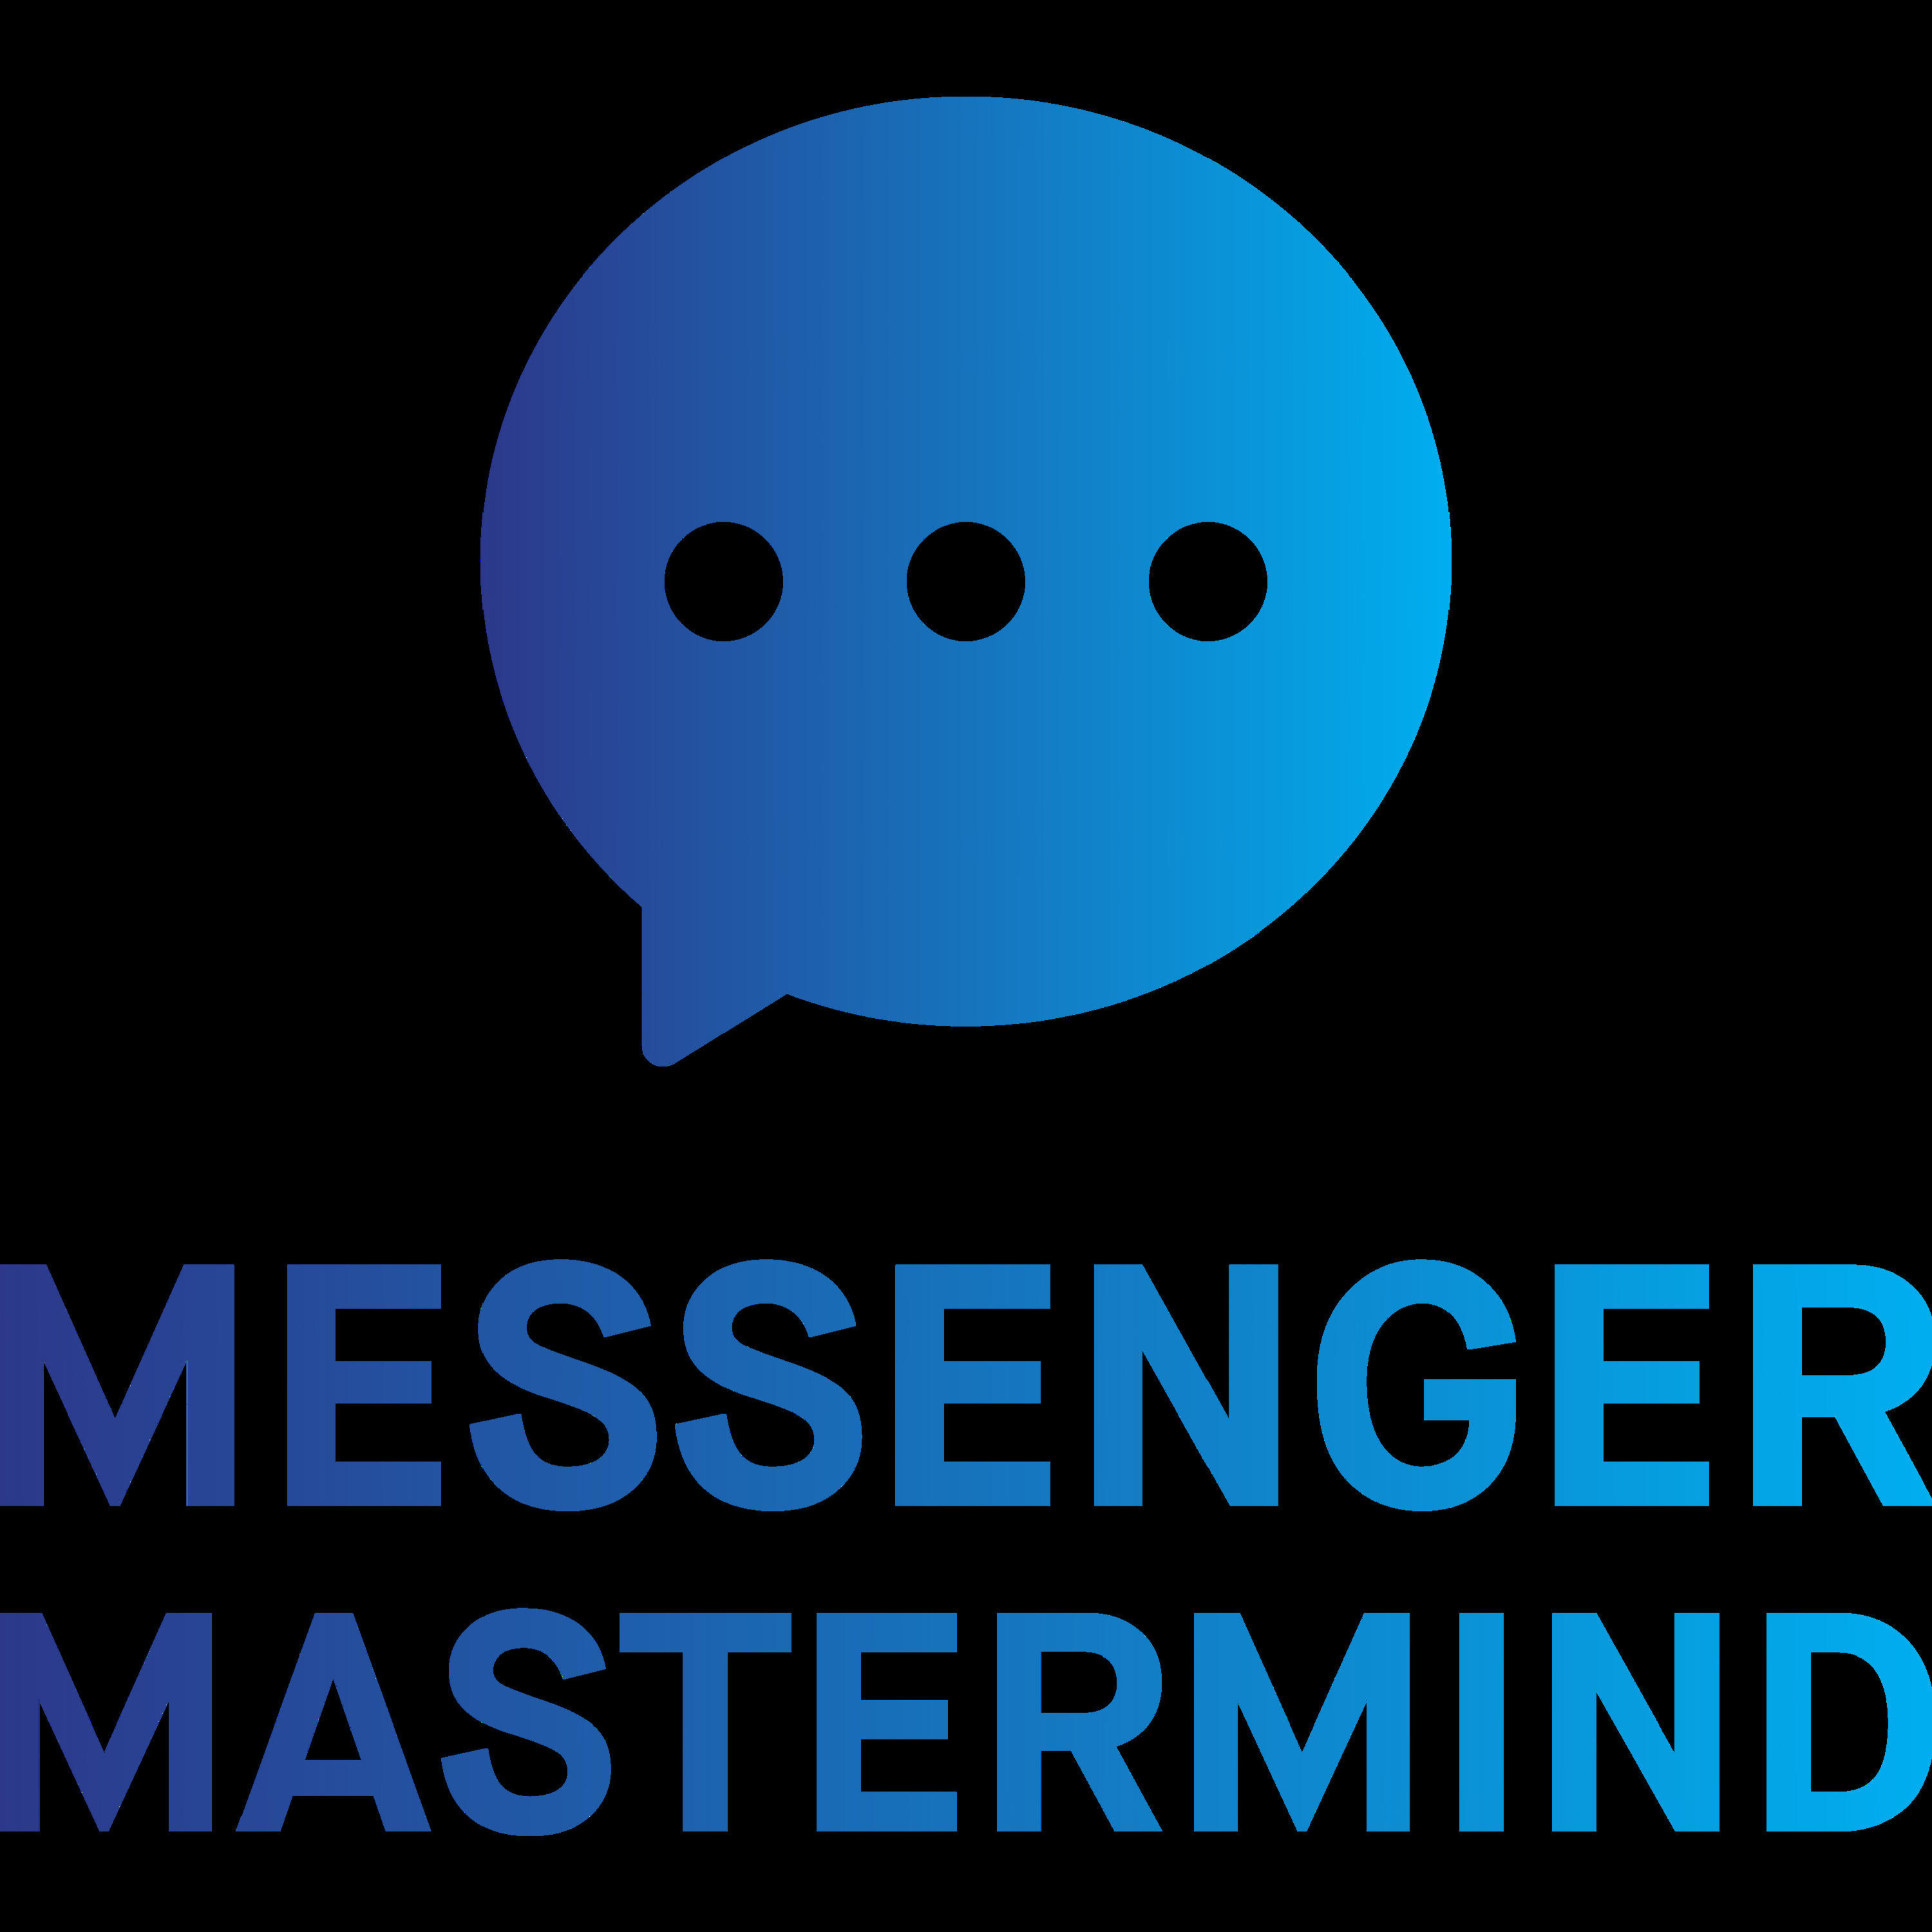 Messenger Mastermind